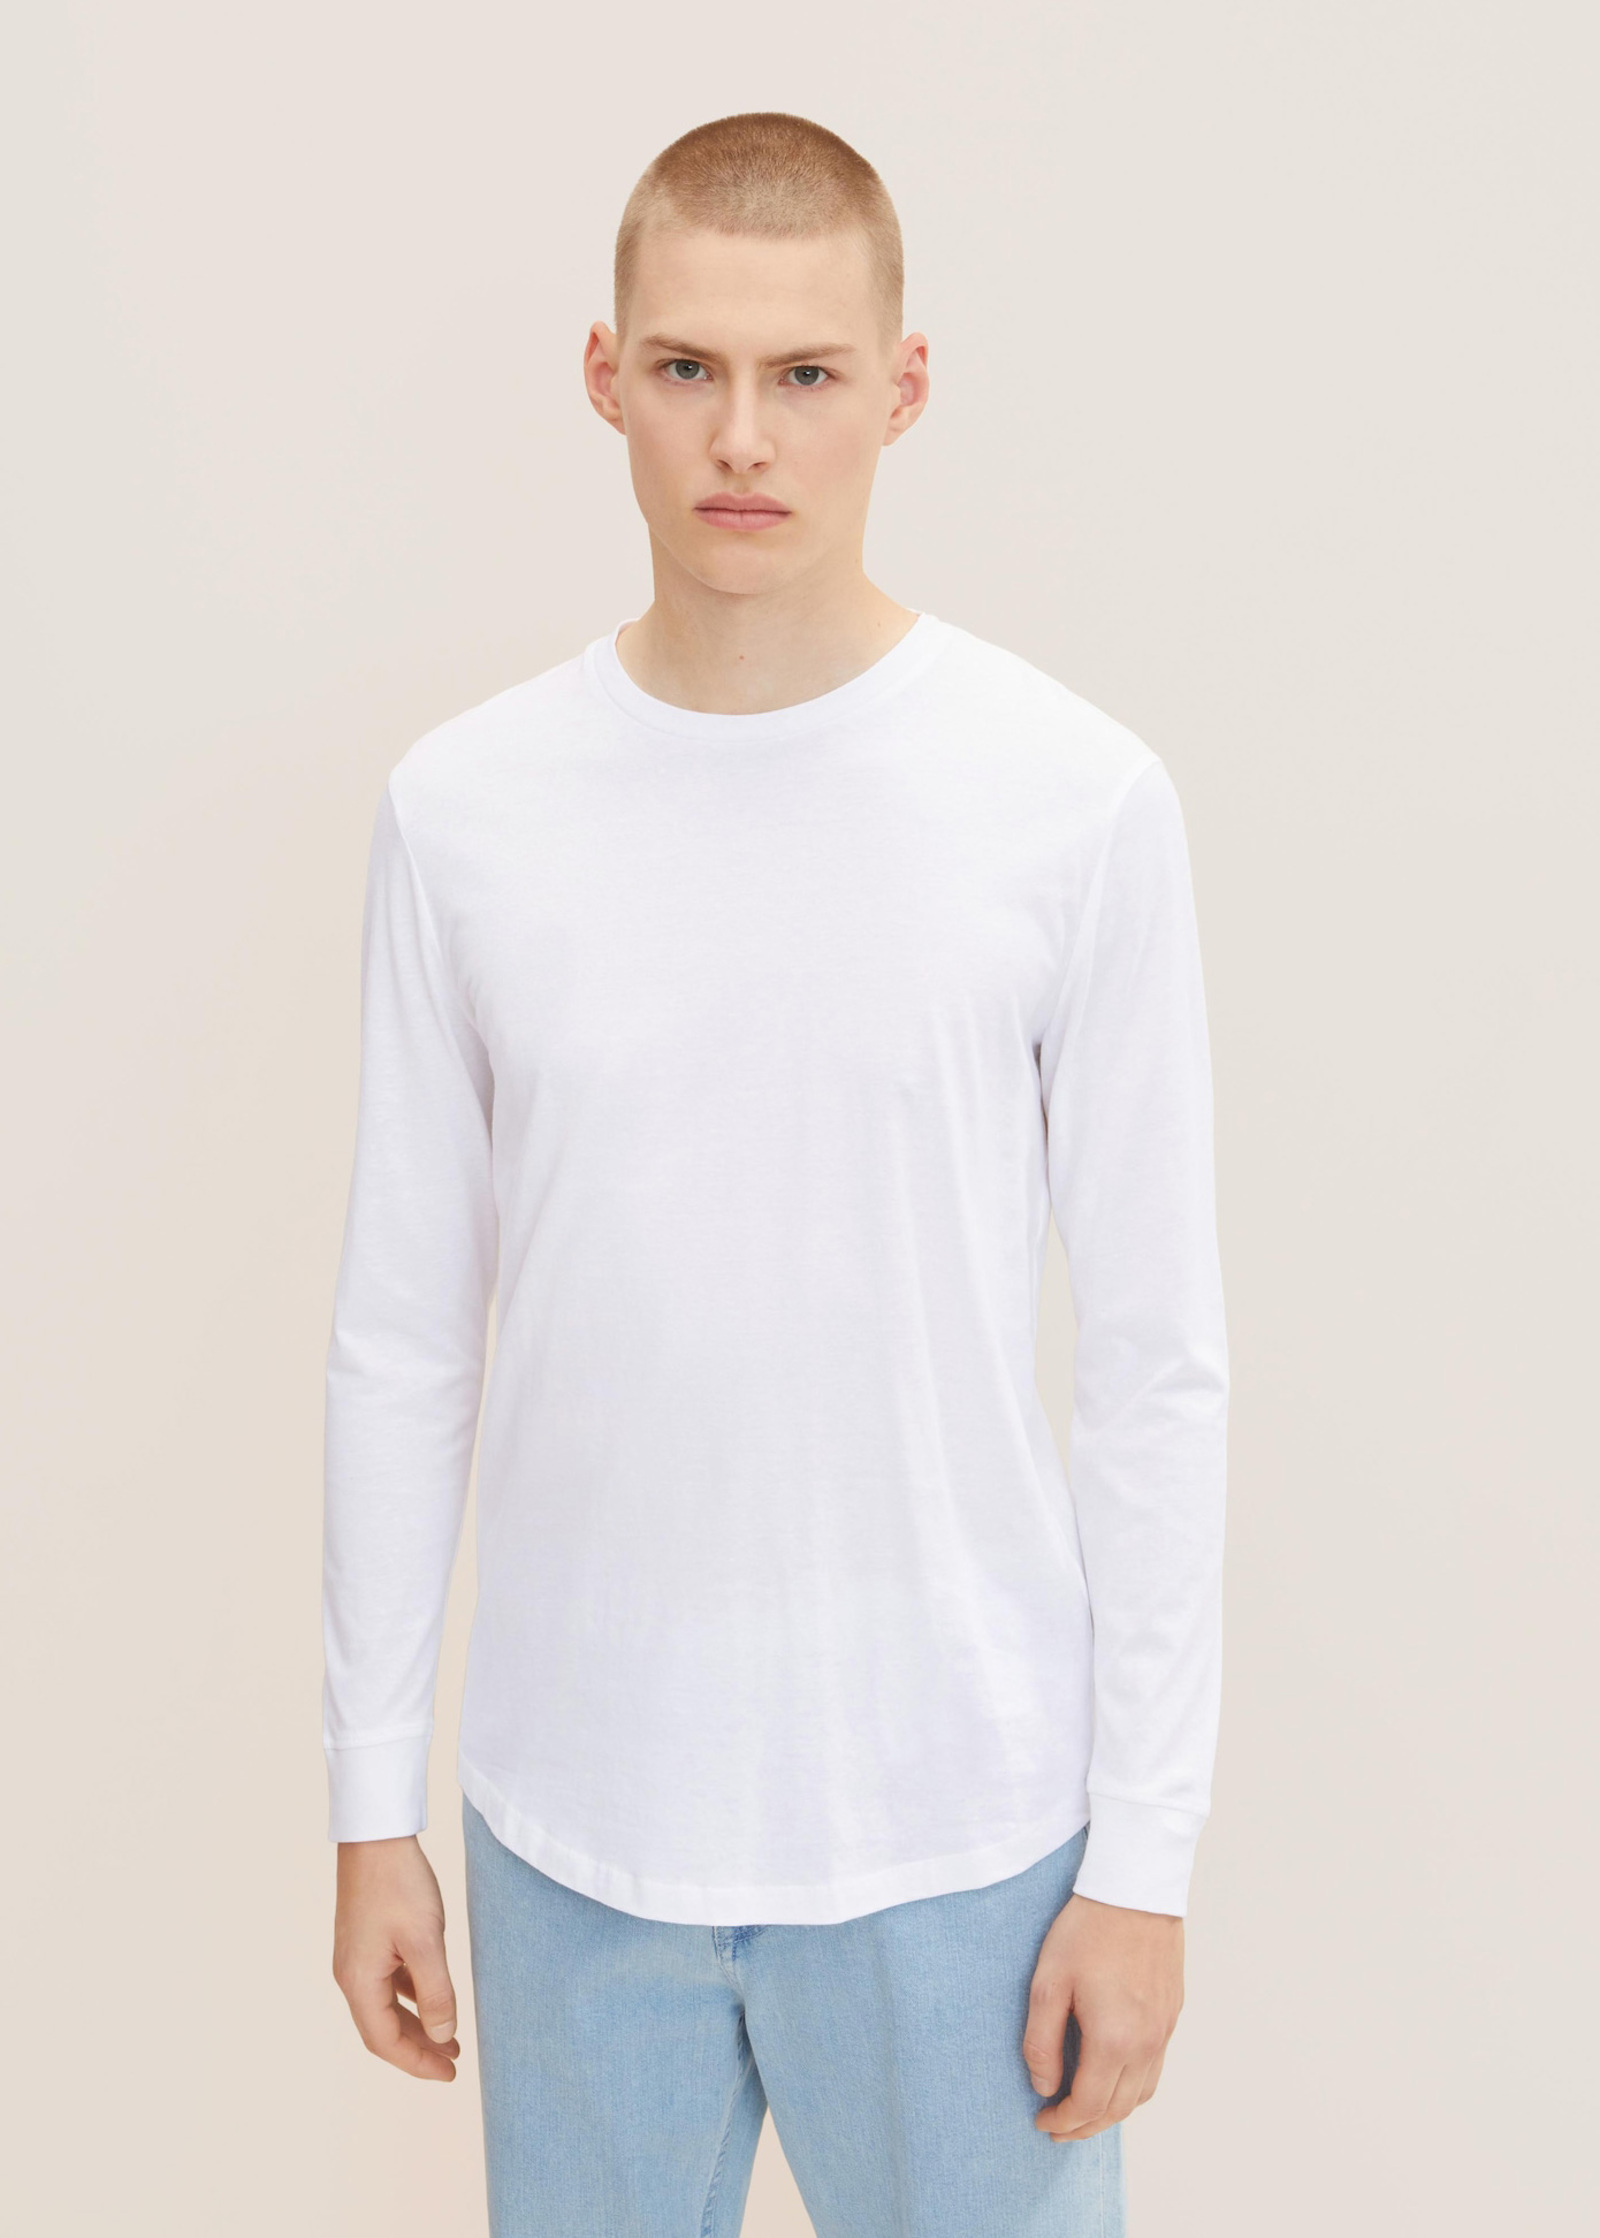 Size Basic Denim L - White Tom Long-sleeved Tailor® Shirt